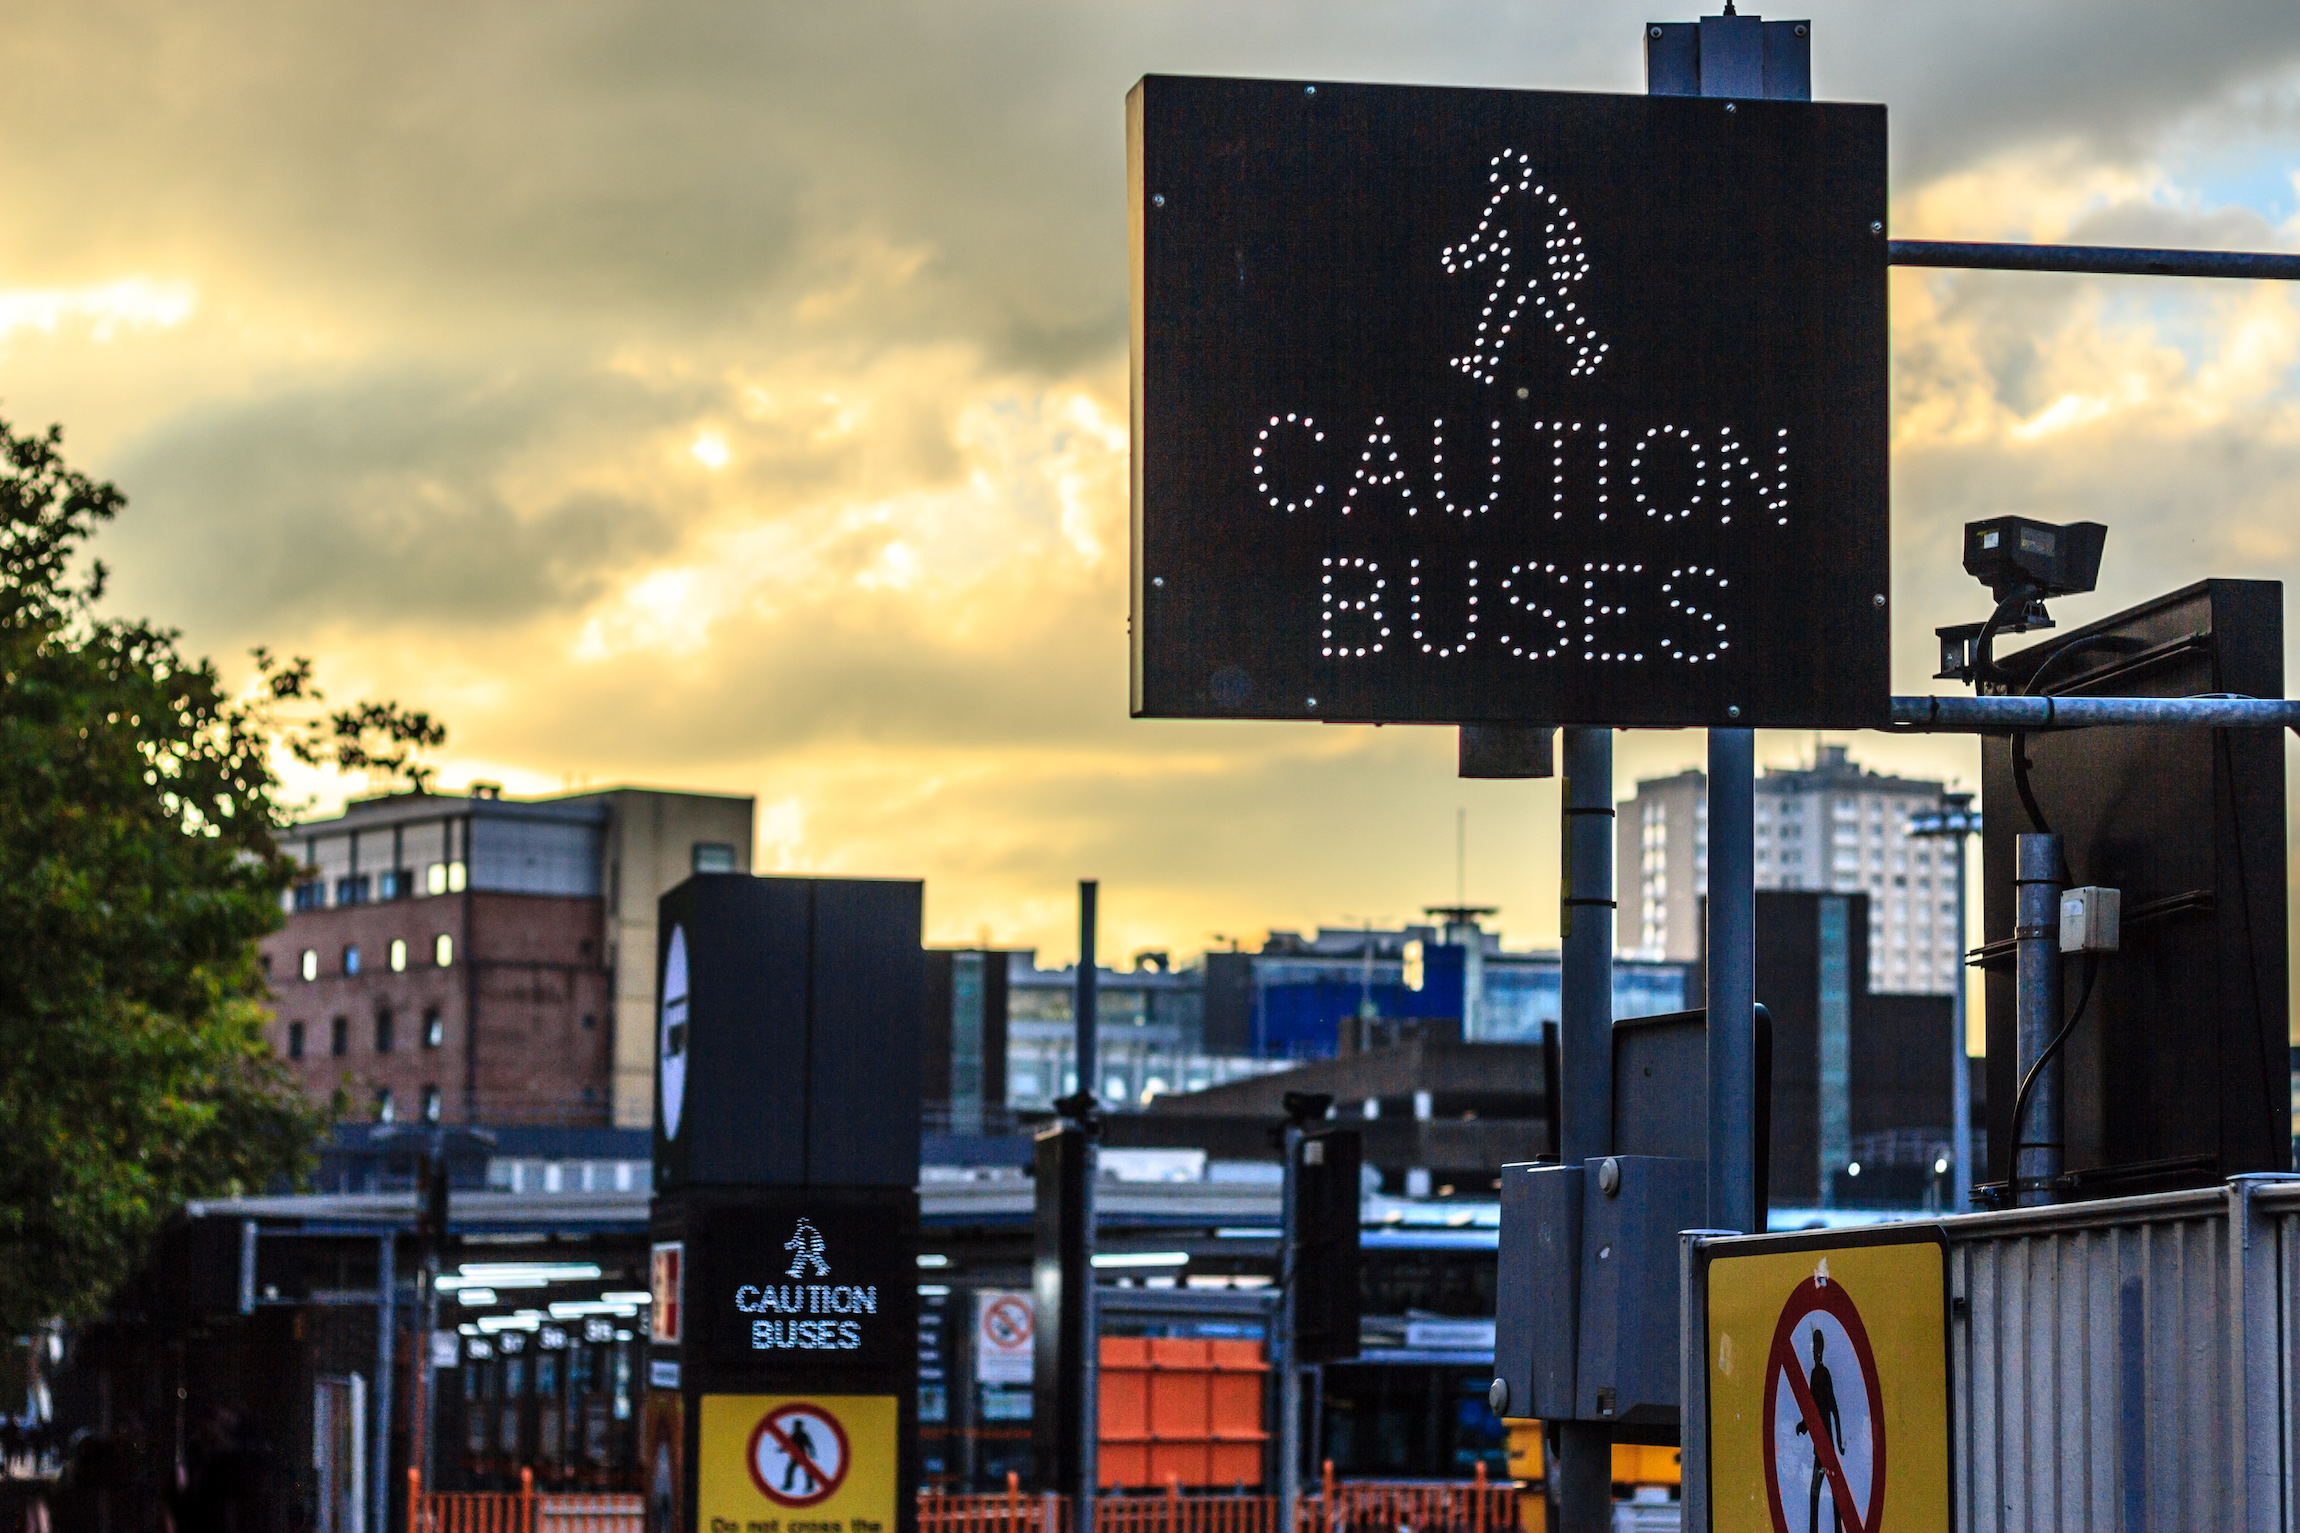 Koncepcja transportu znaku Caution Buses, dworzec autobusowy Buchanan, Glasgow, Szkocja, Wielka Brytania - Komunikacja miejska w Glasgow